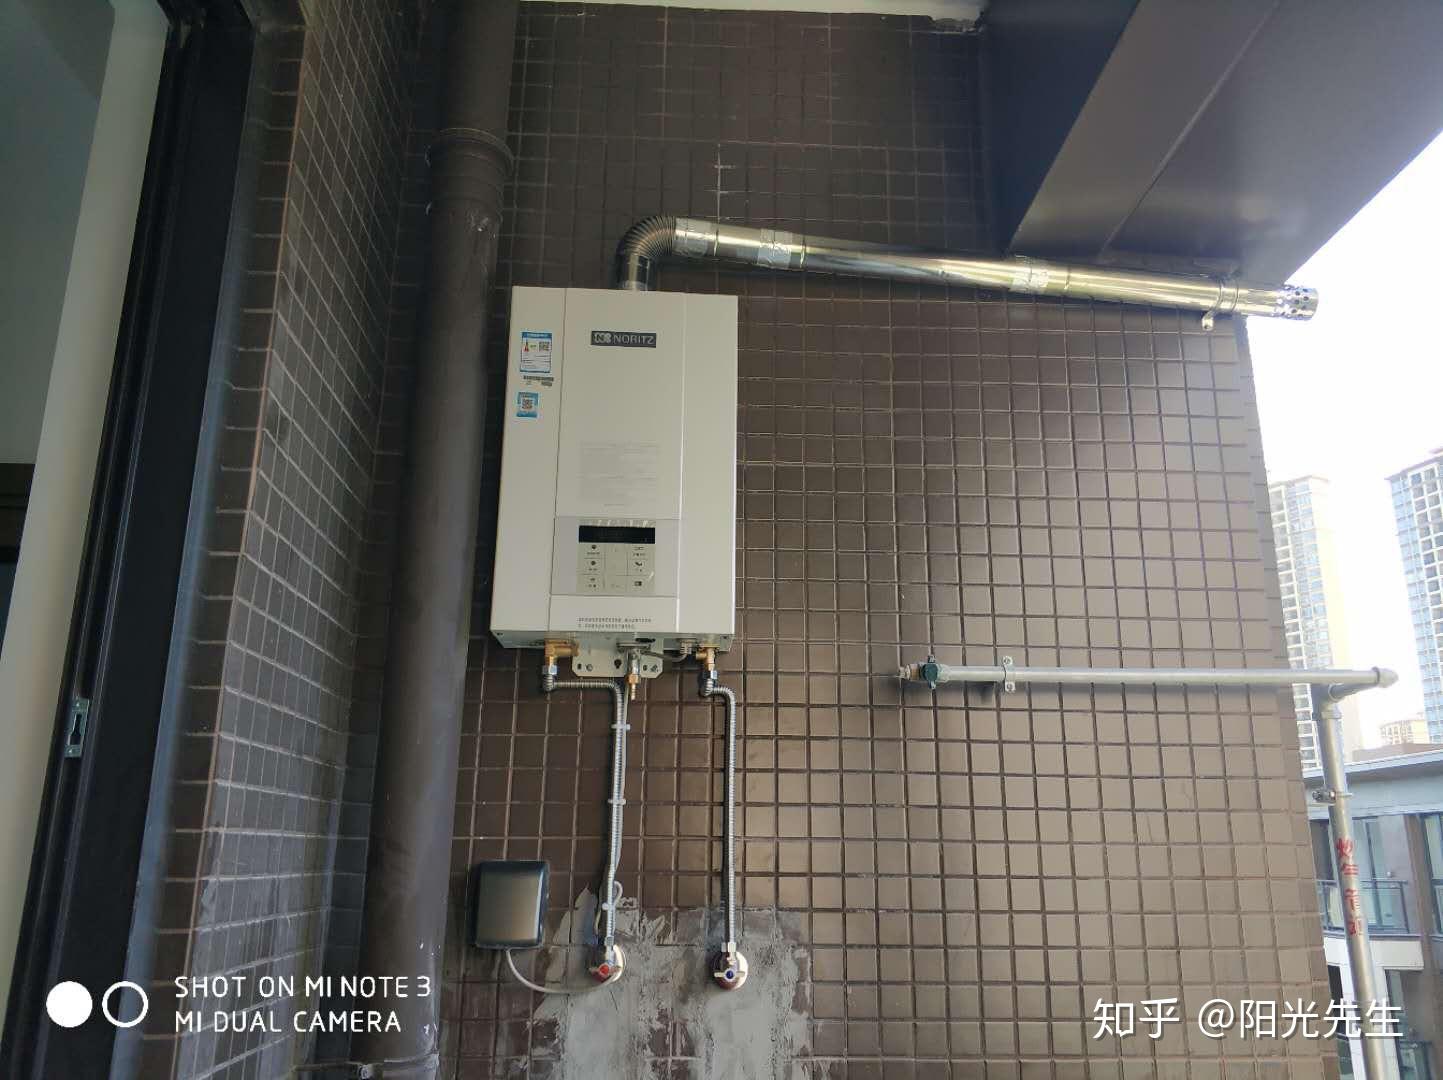 燃气热水器的安装位置固定哪面墙吗? 